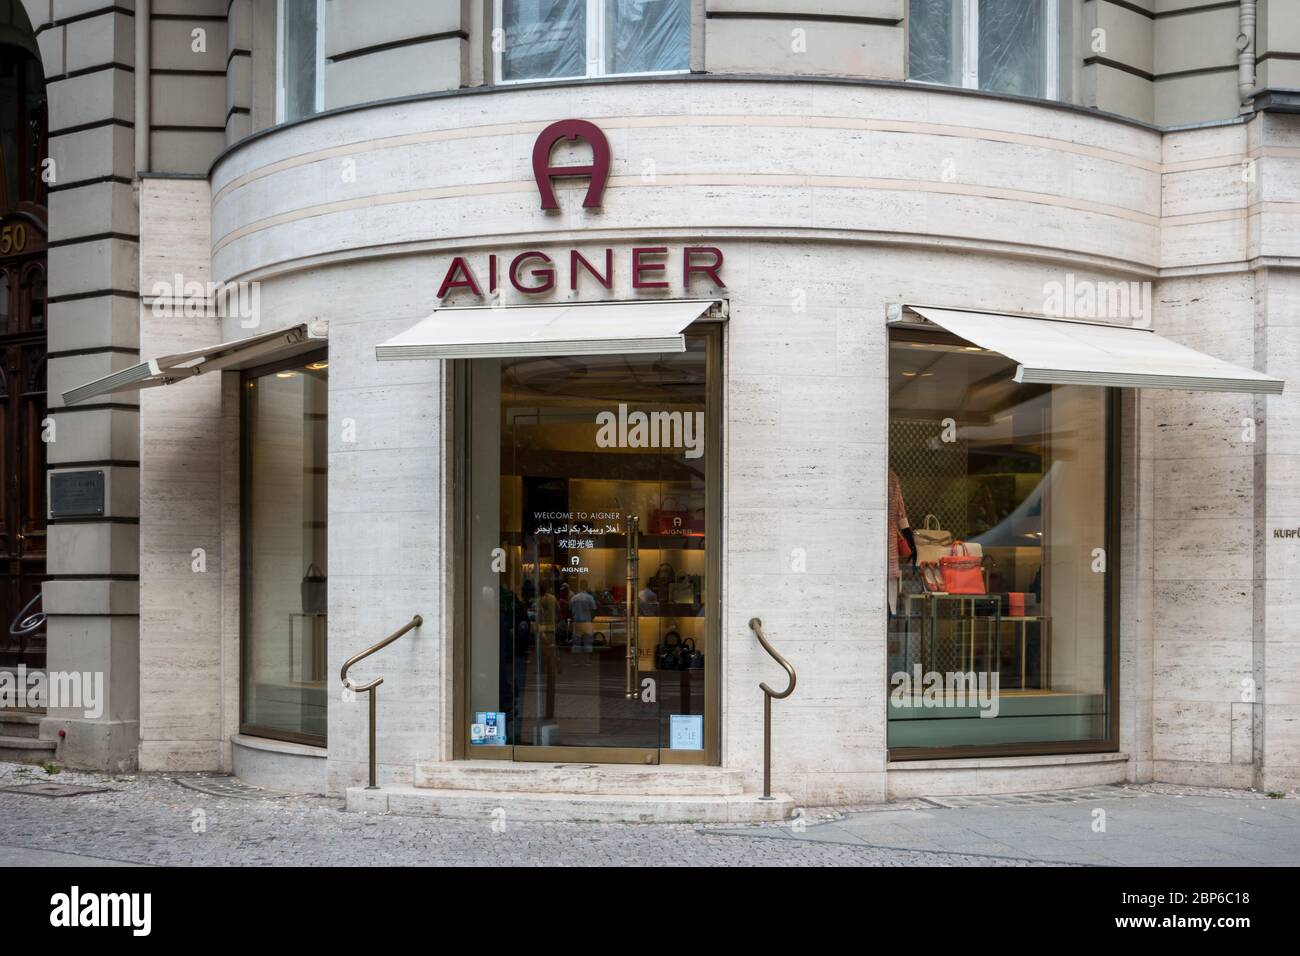 BERLÍN - 05 DE JUNIO de 2016: Boutique de Aigner. Aigner - casa de moda, producir artículos de lujo incluyendo bolsos, zapatos, mujeres listas para usar, carteras, y accesorios de cuero. Foto de stock